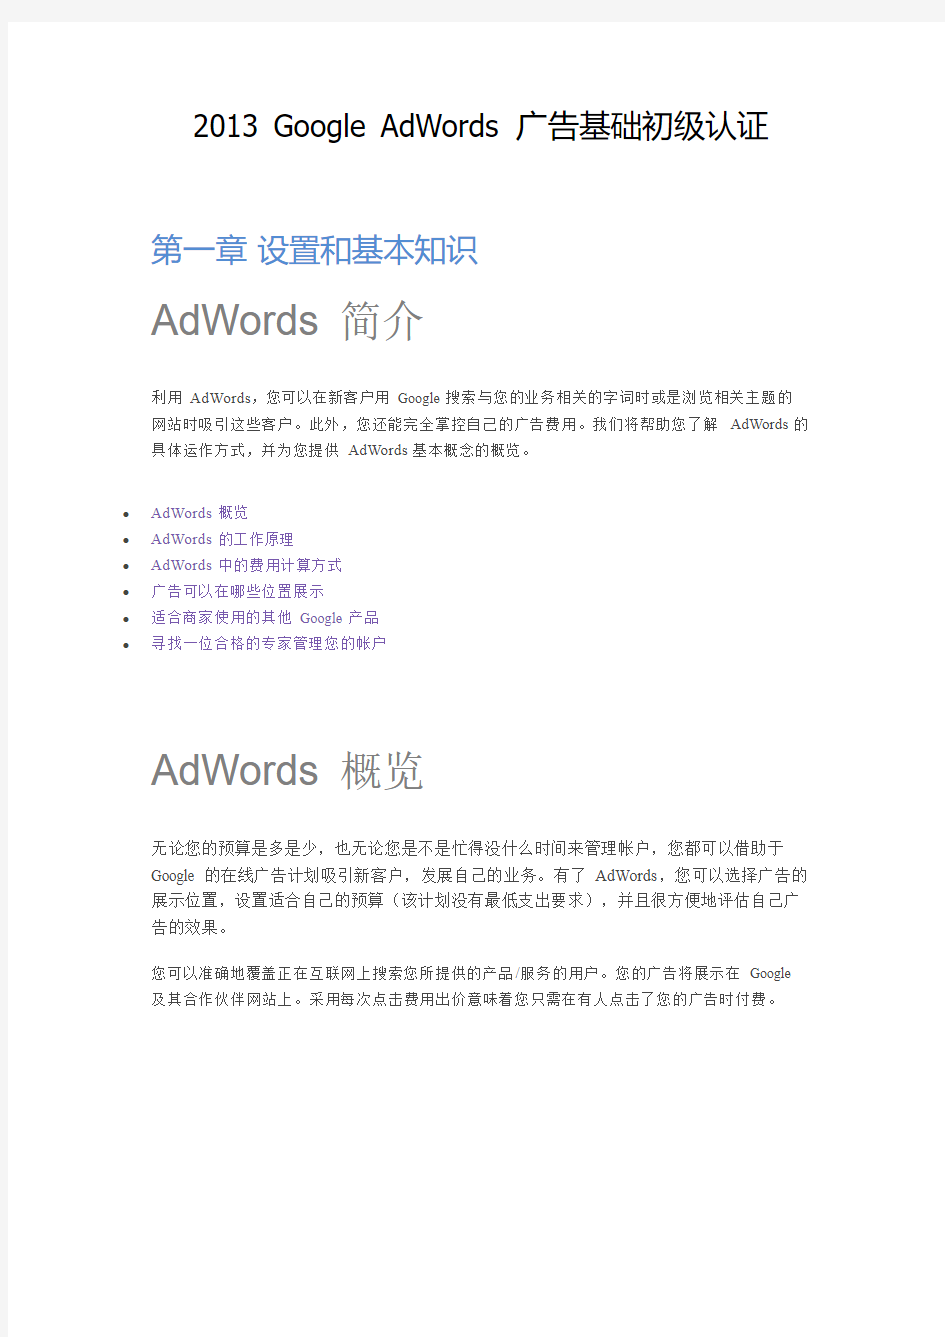 【最新版】2013 Google AdWords 谷歌广告基础初级认证考试资料(一)